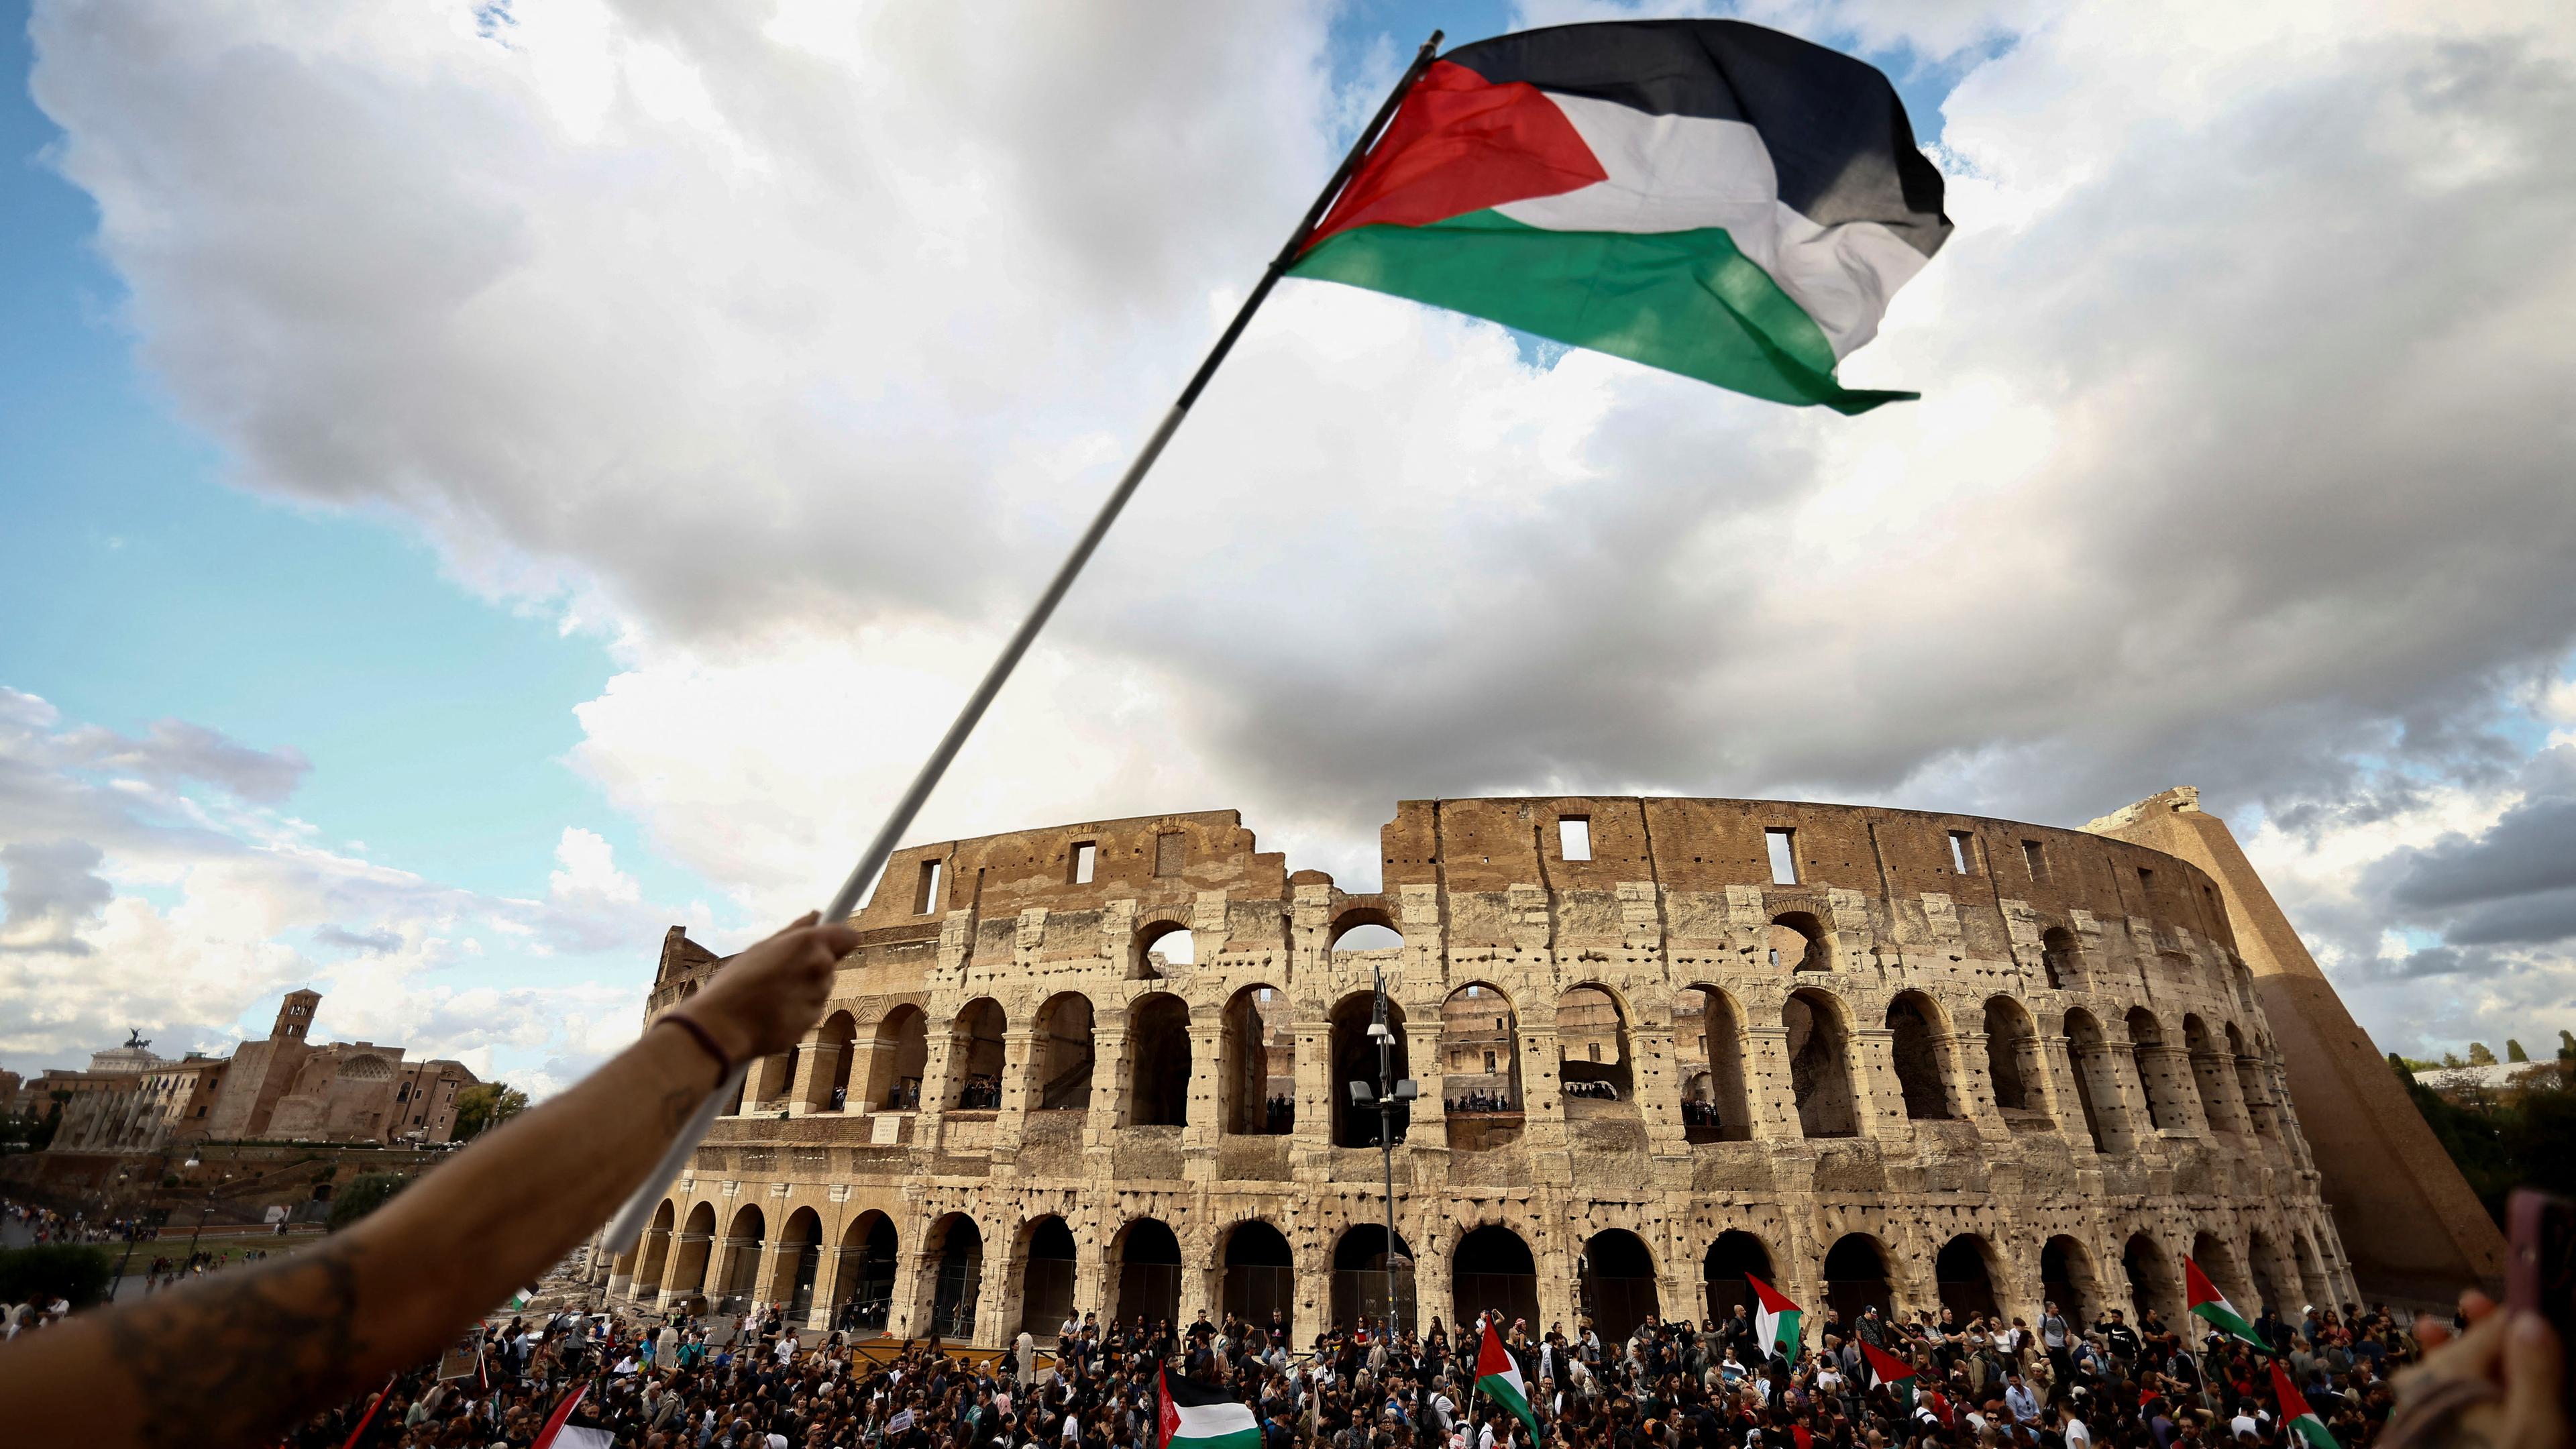 Vor dem Colosseum in Rom haben sich tausende Menschen versammelt, um Solidarität gegenüber den Palästinensern im Gazastreifen zu zeigen.